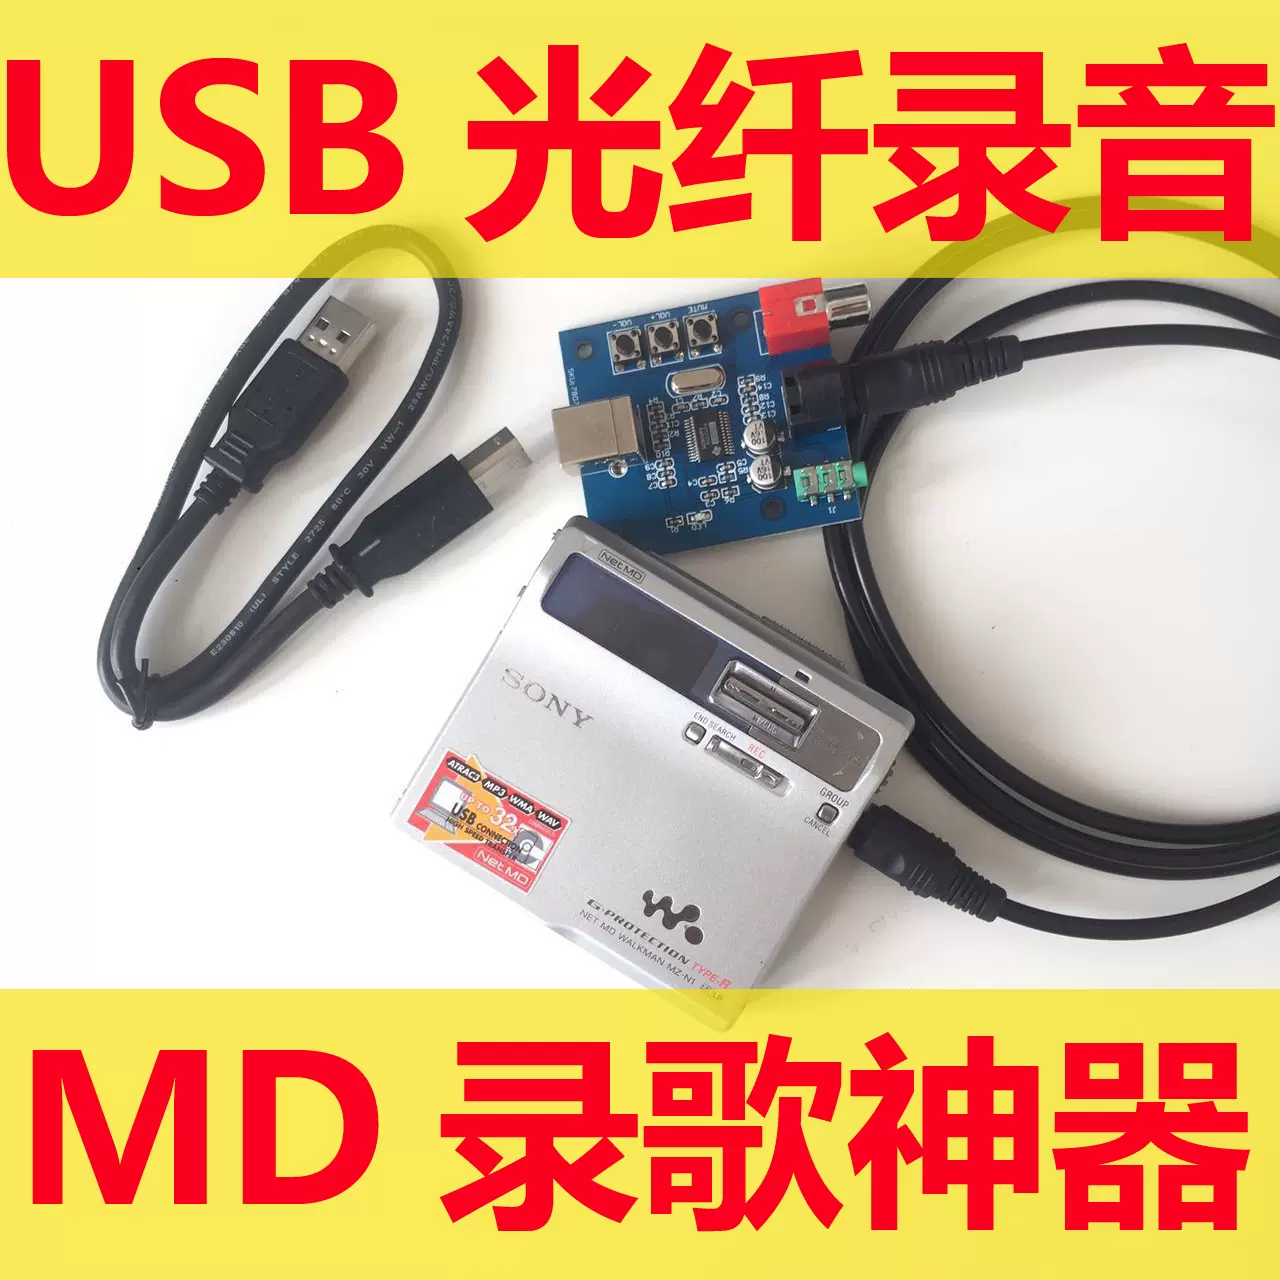 SONY MD机光纤录歌器MD录歌神器自动分曲支持电脑USB 手机-Taobao